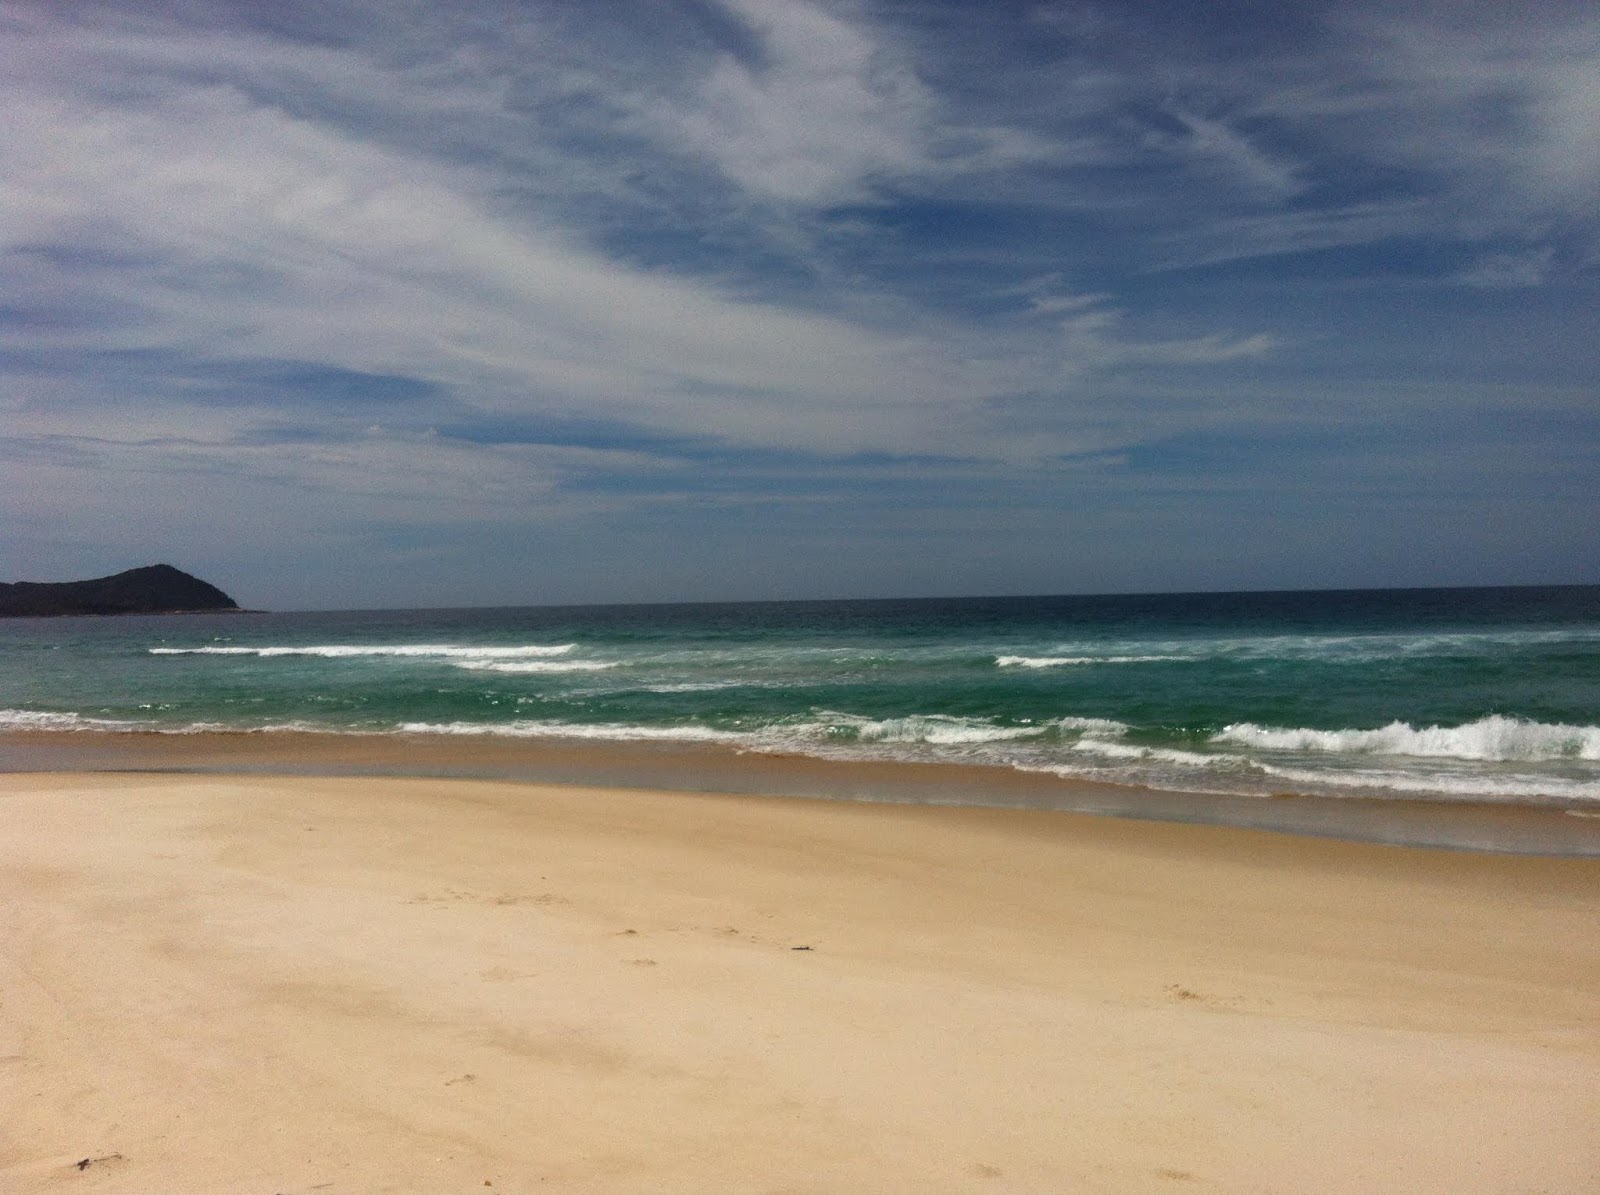 Fotografie cu Praia do Sul cu o suprafață de apa turcoaz